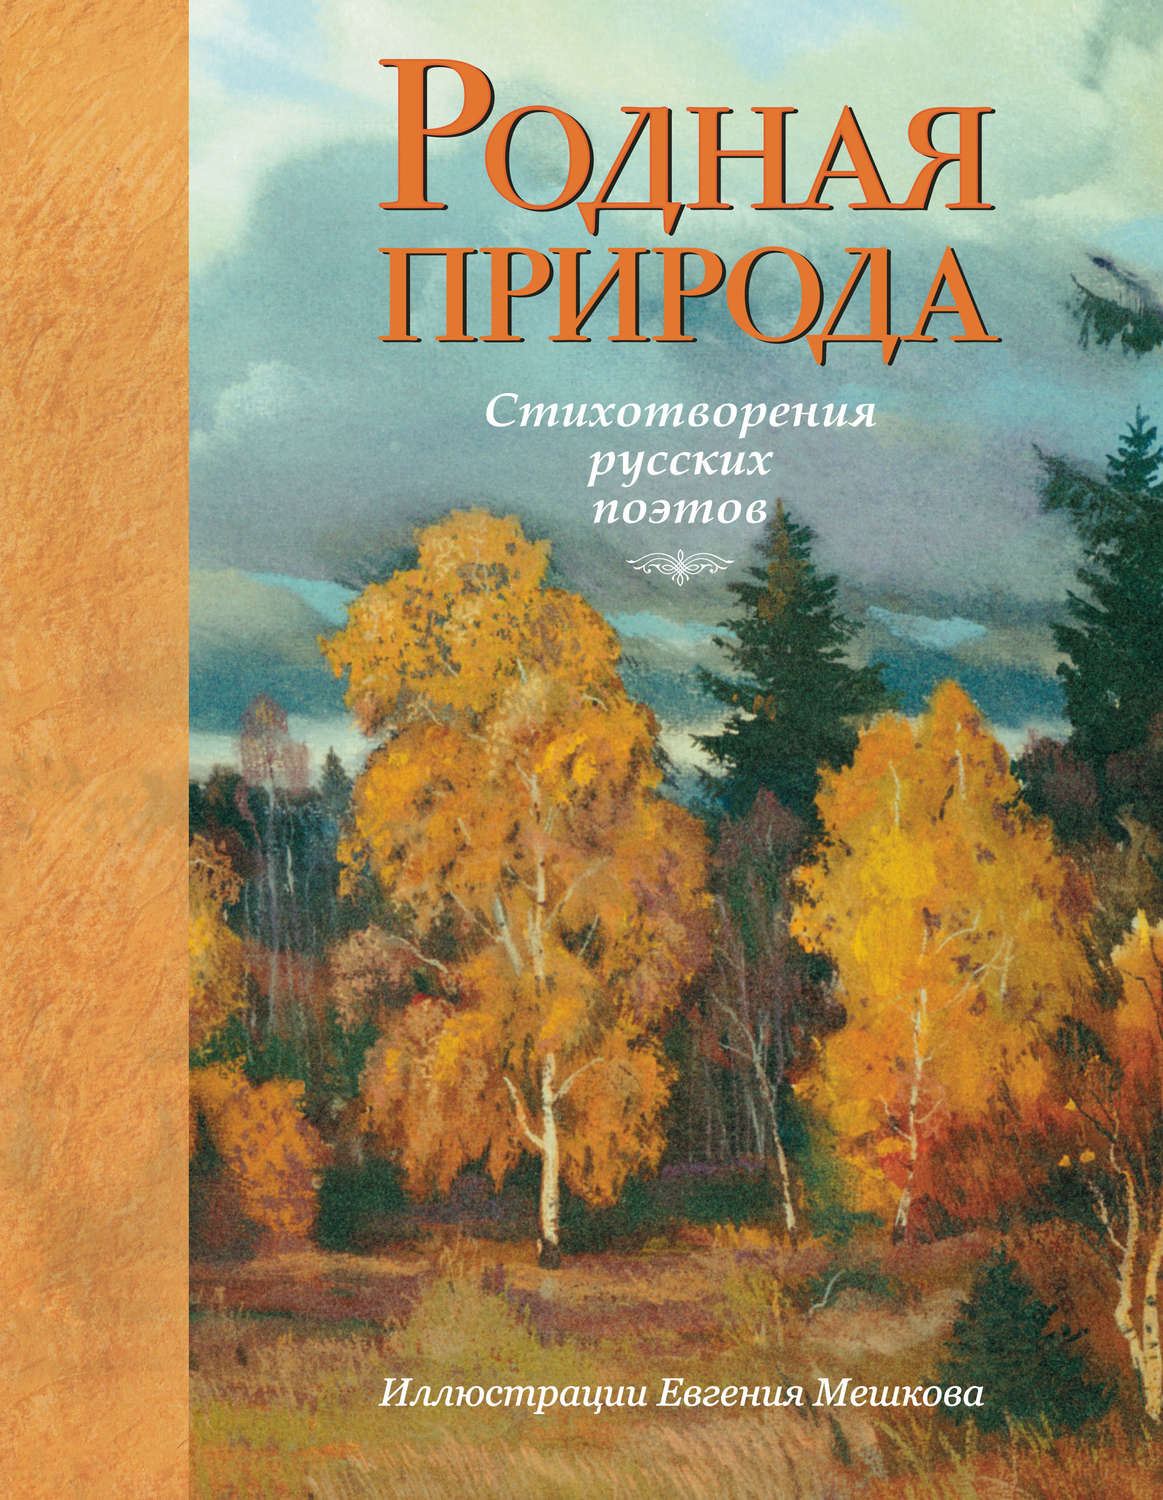 Книги русских поэтов о природе